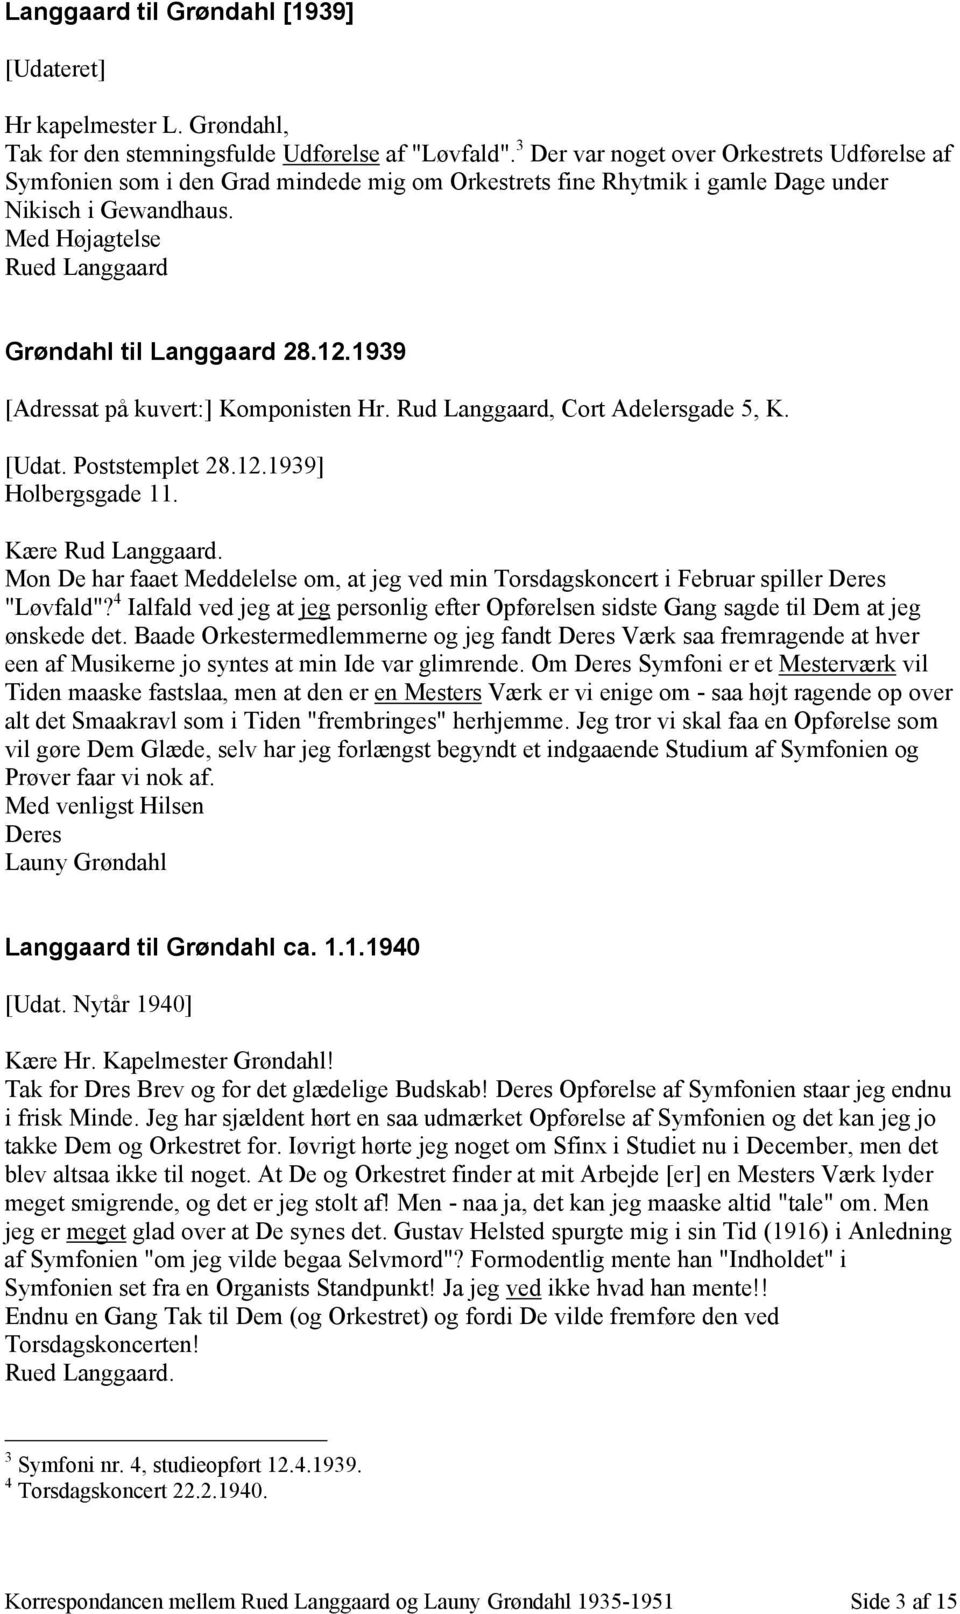 1939 [Adressat på kuvert:] Komponisten Hr. Rud Langgaard, Cort Adelersgade 5, K. [Udat. Poststemplet 28.12.1939] Holbergsgade 11. Kære Rud Langgaard.